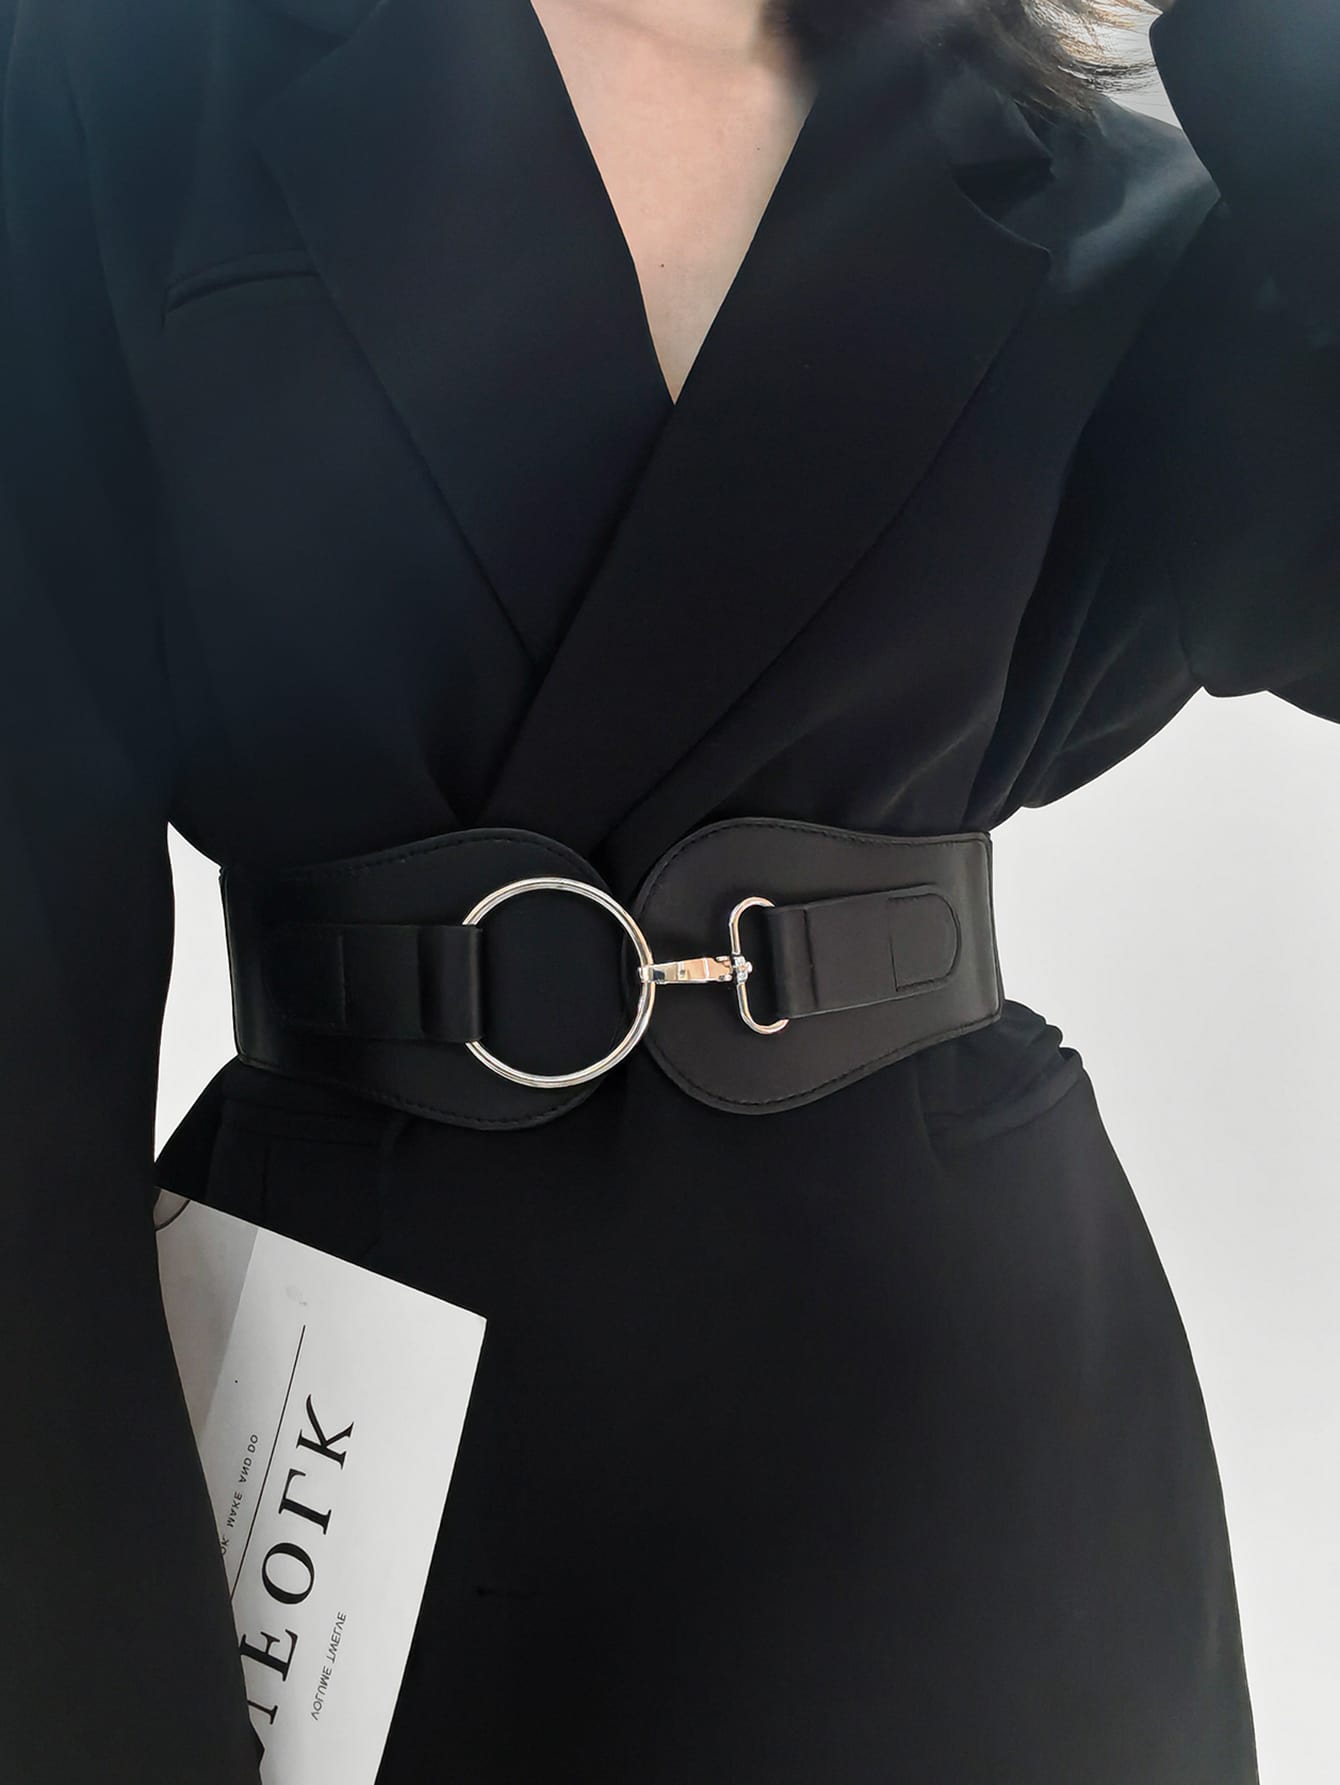 1шт женский черный модный широкий ремень с металлической пряжкой для украшения платья, черный ремень женский эластичный с металлической пряжкой модный широкий черный пояс корсет аксессуар для одежды